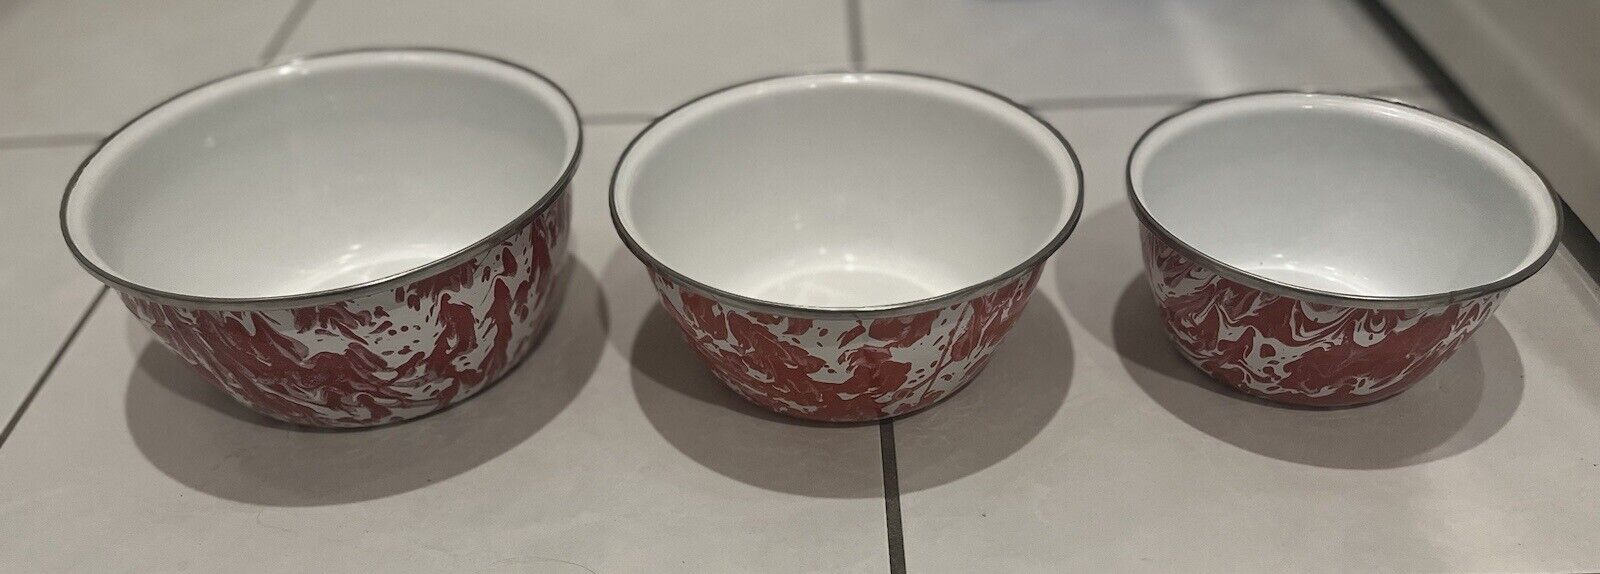 VTG enamelware mixing/nesting bowls. Set of 3 Red & White speckled splatterware